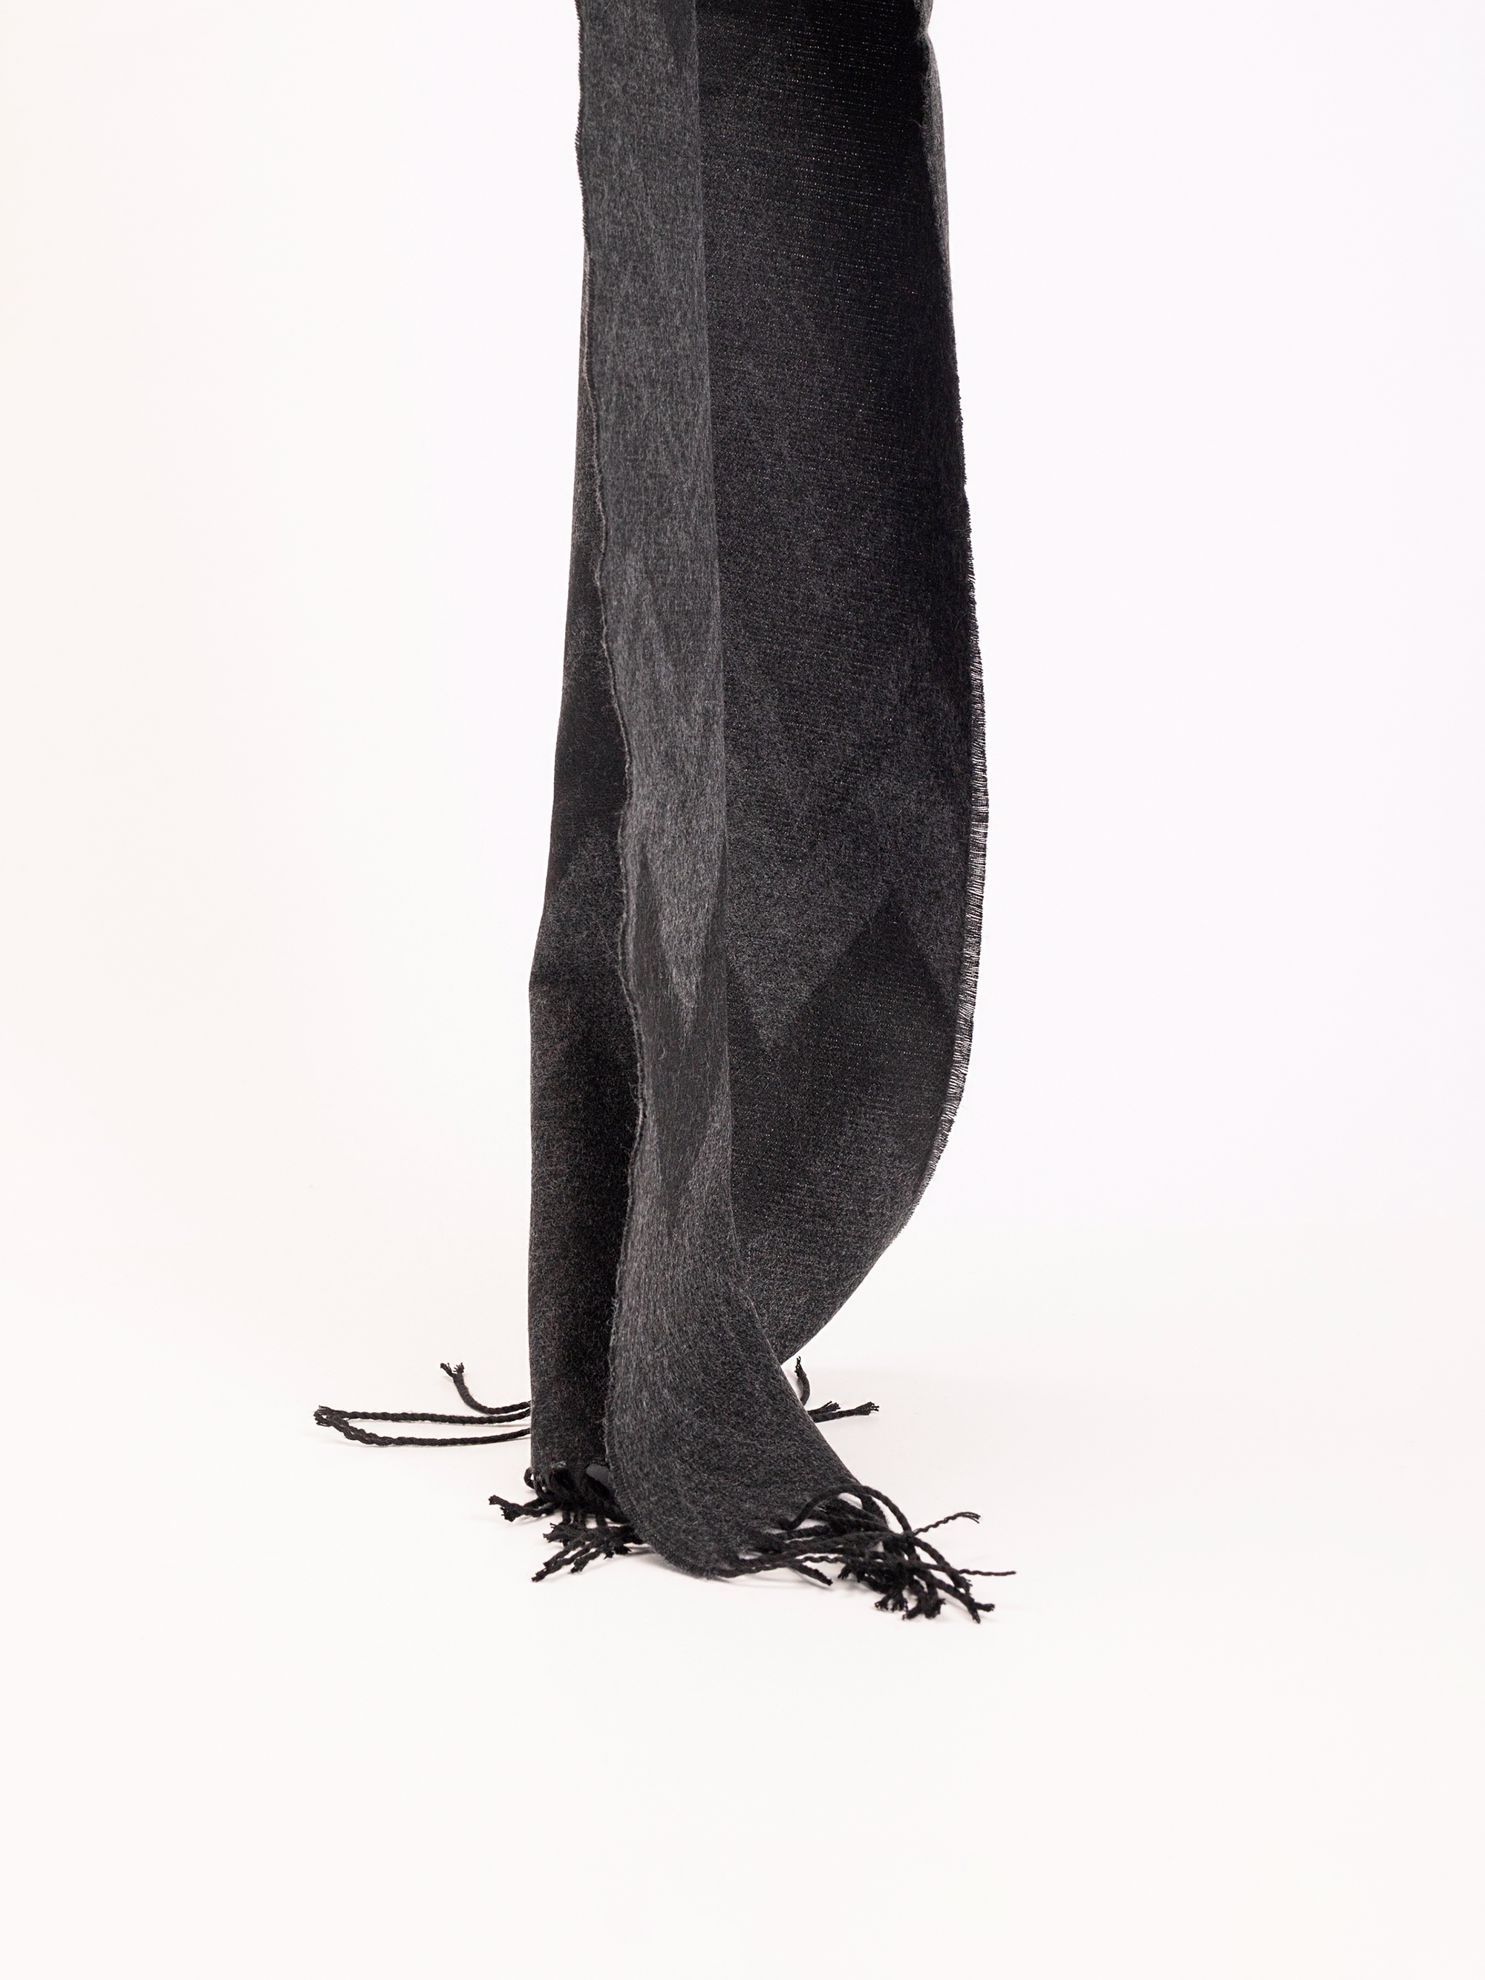 Karaca Erkek Kaşkol-Siyah. ürün görseli